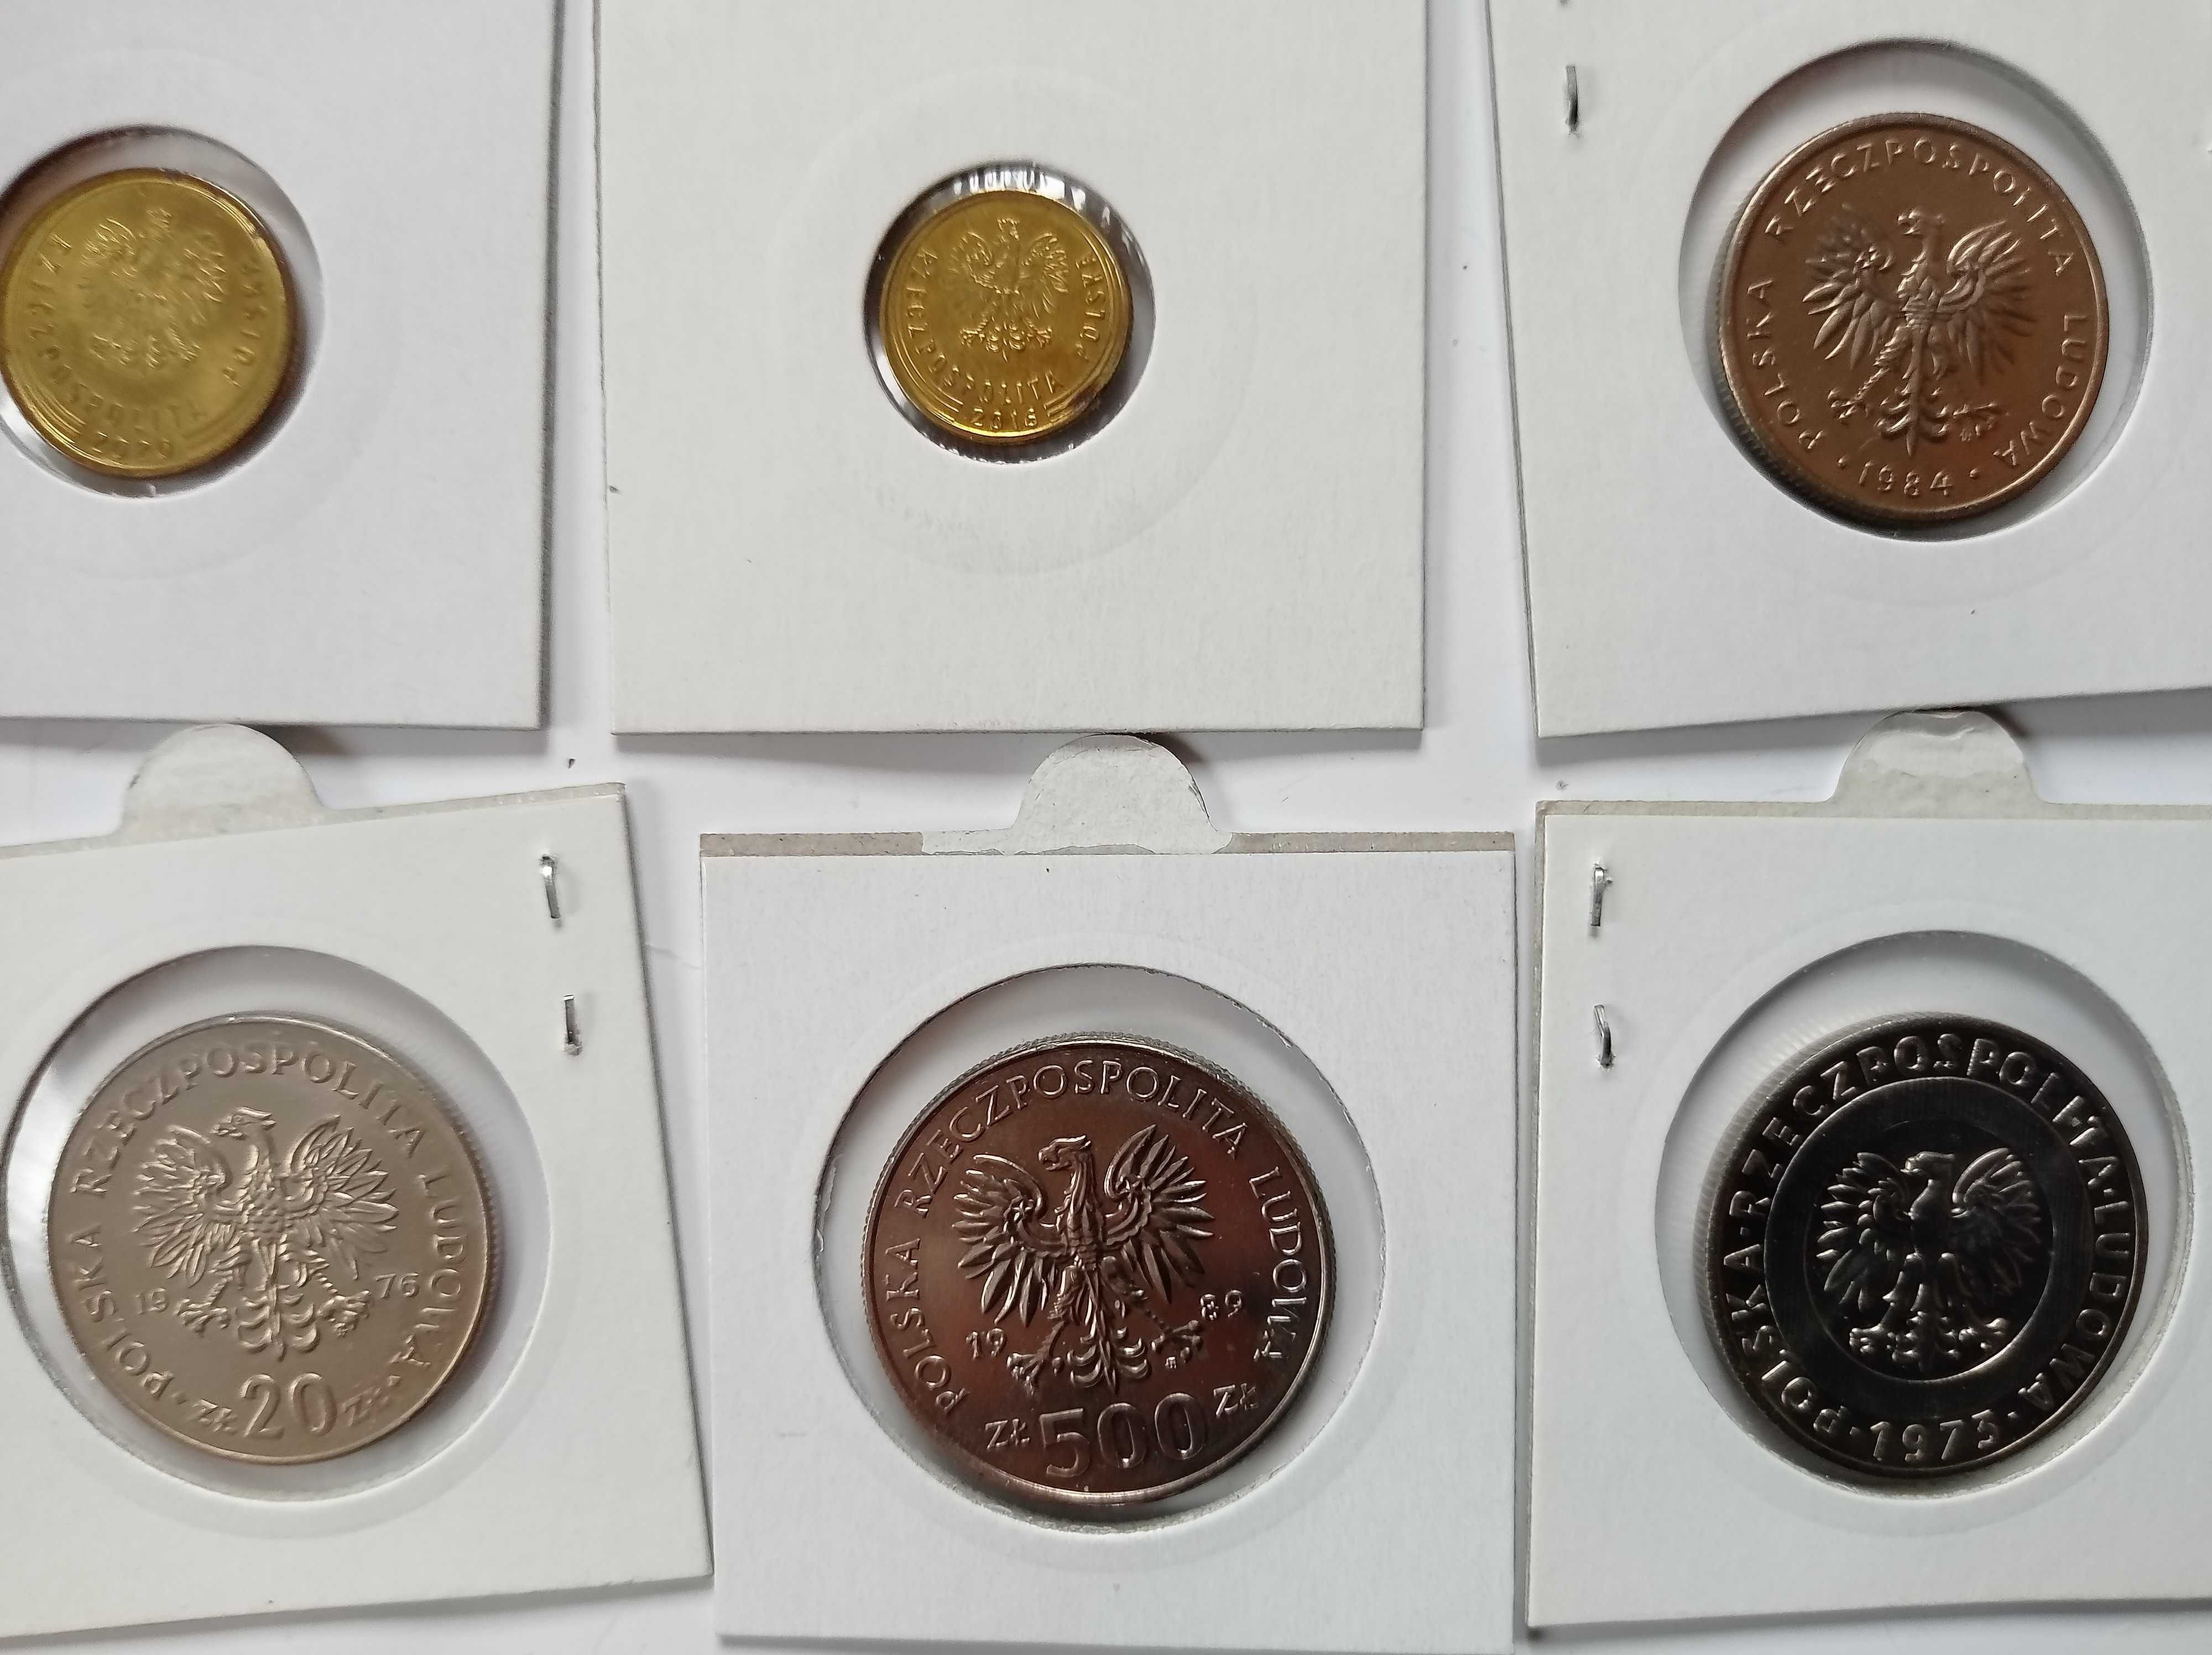 Stare monety UNC - Polska + eurocenty